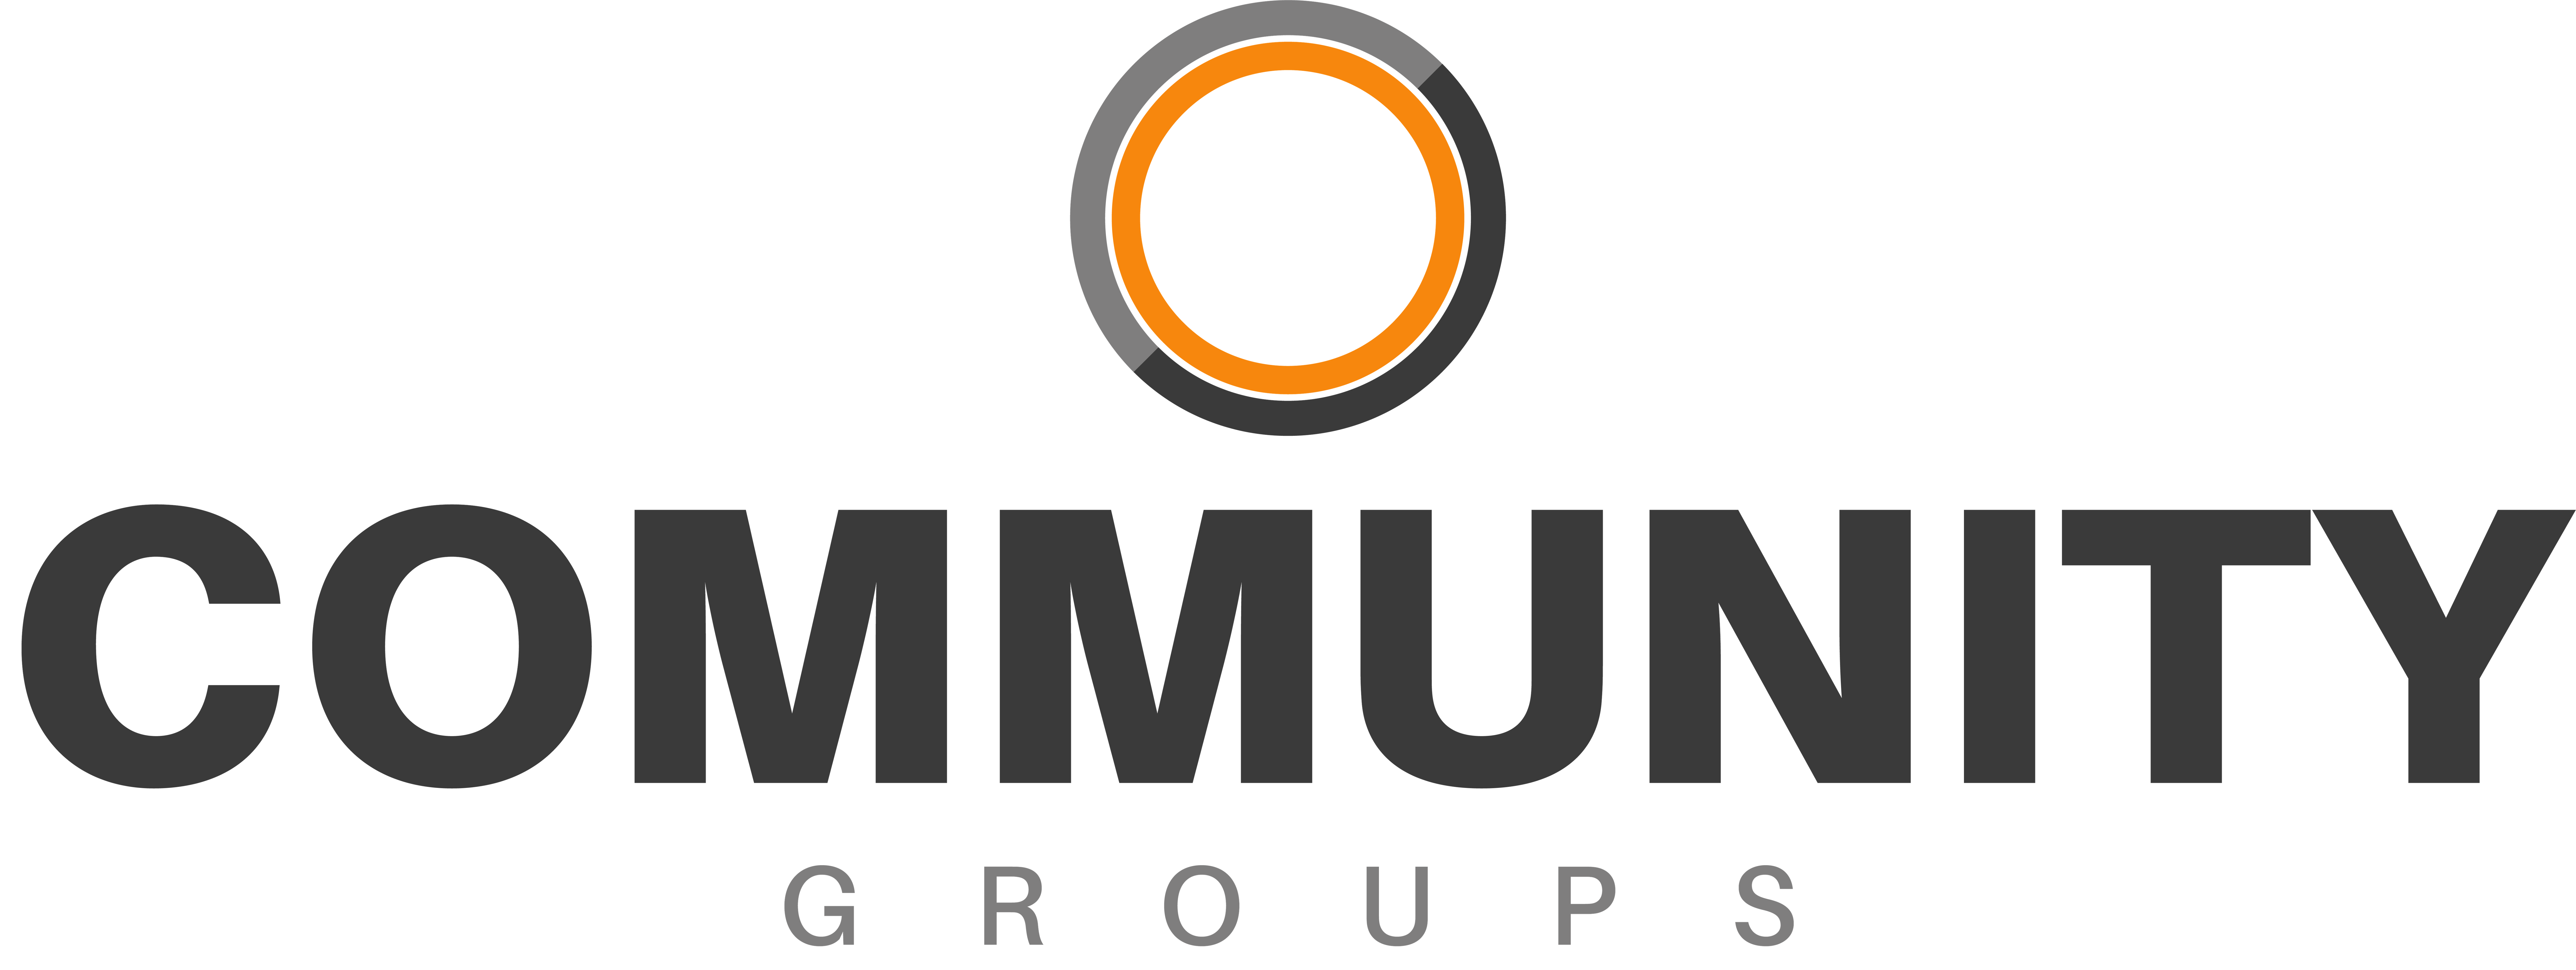 Community Group Logo